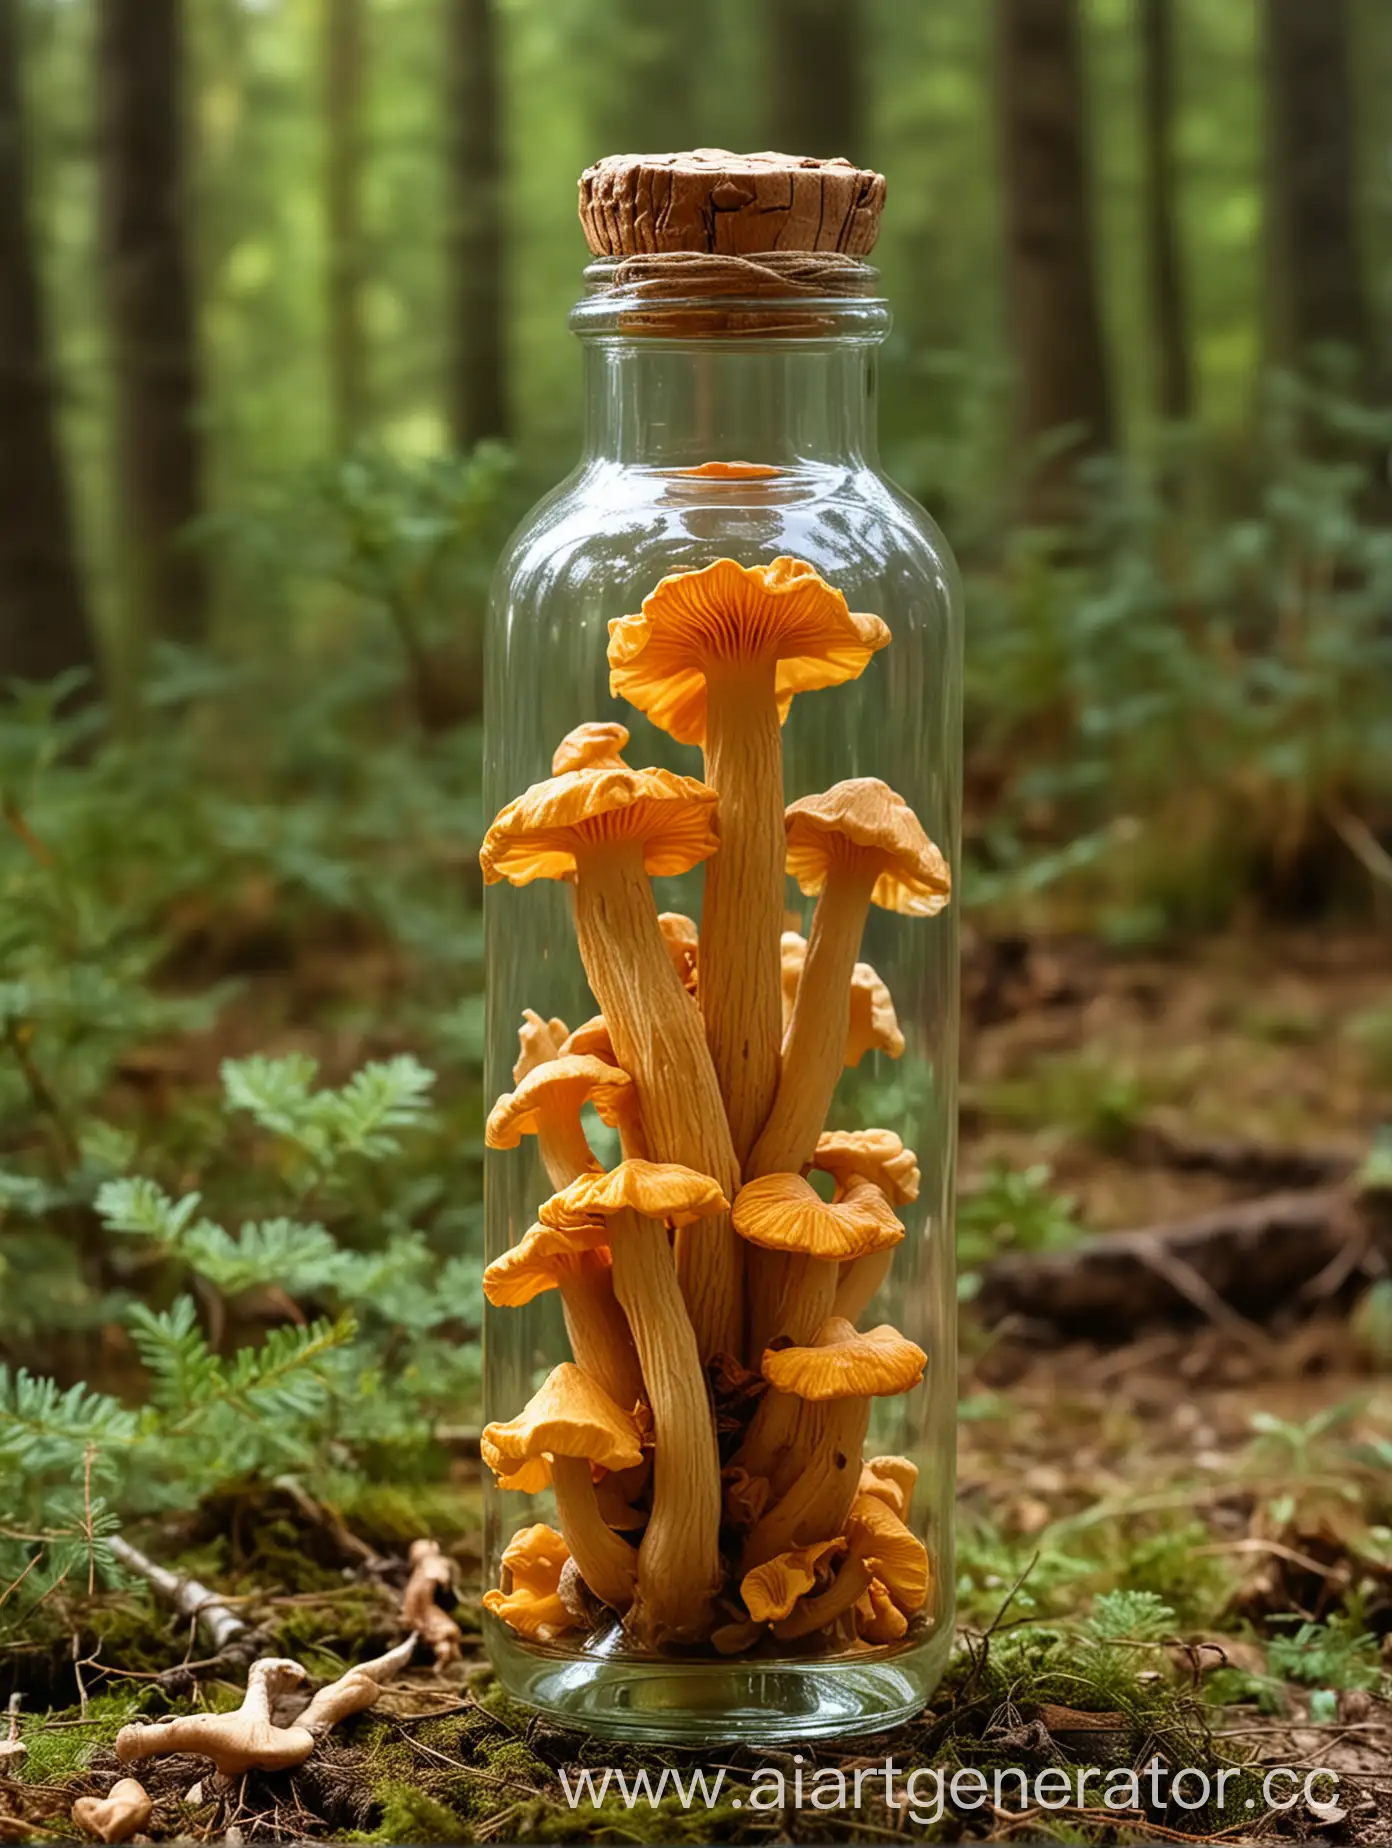 гриб лисичка в стеклянной бутылке на фоне природы